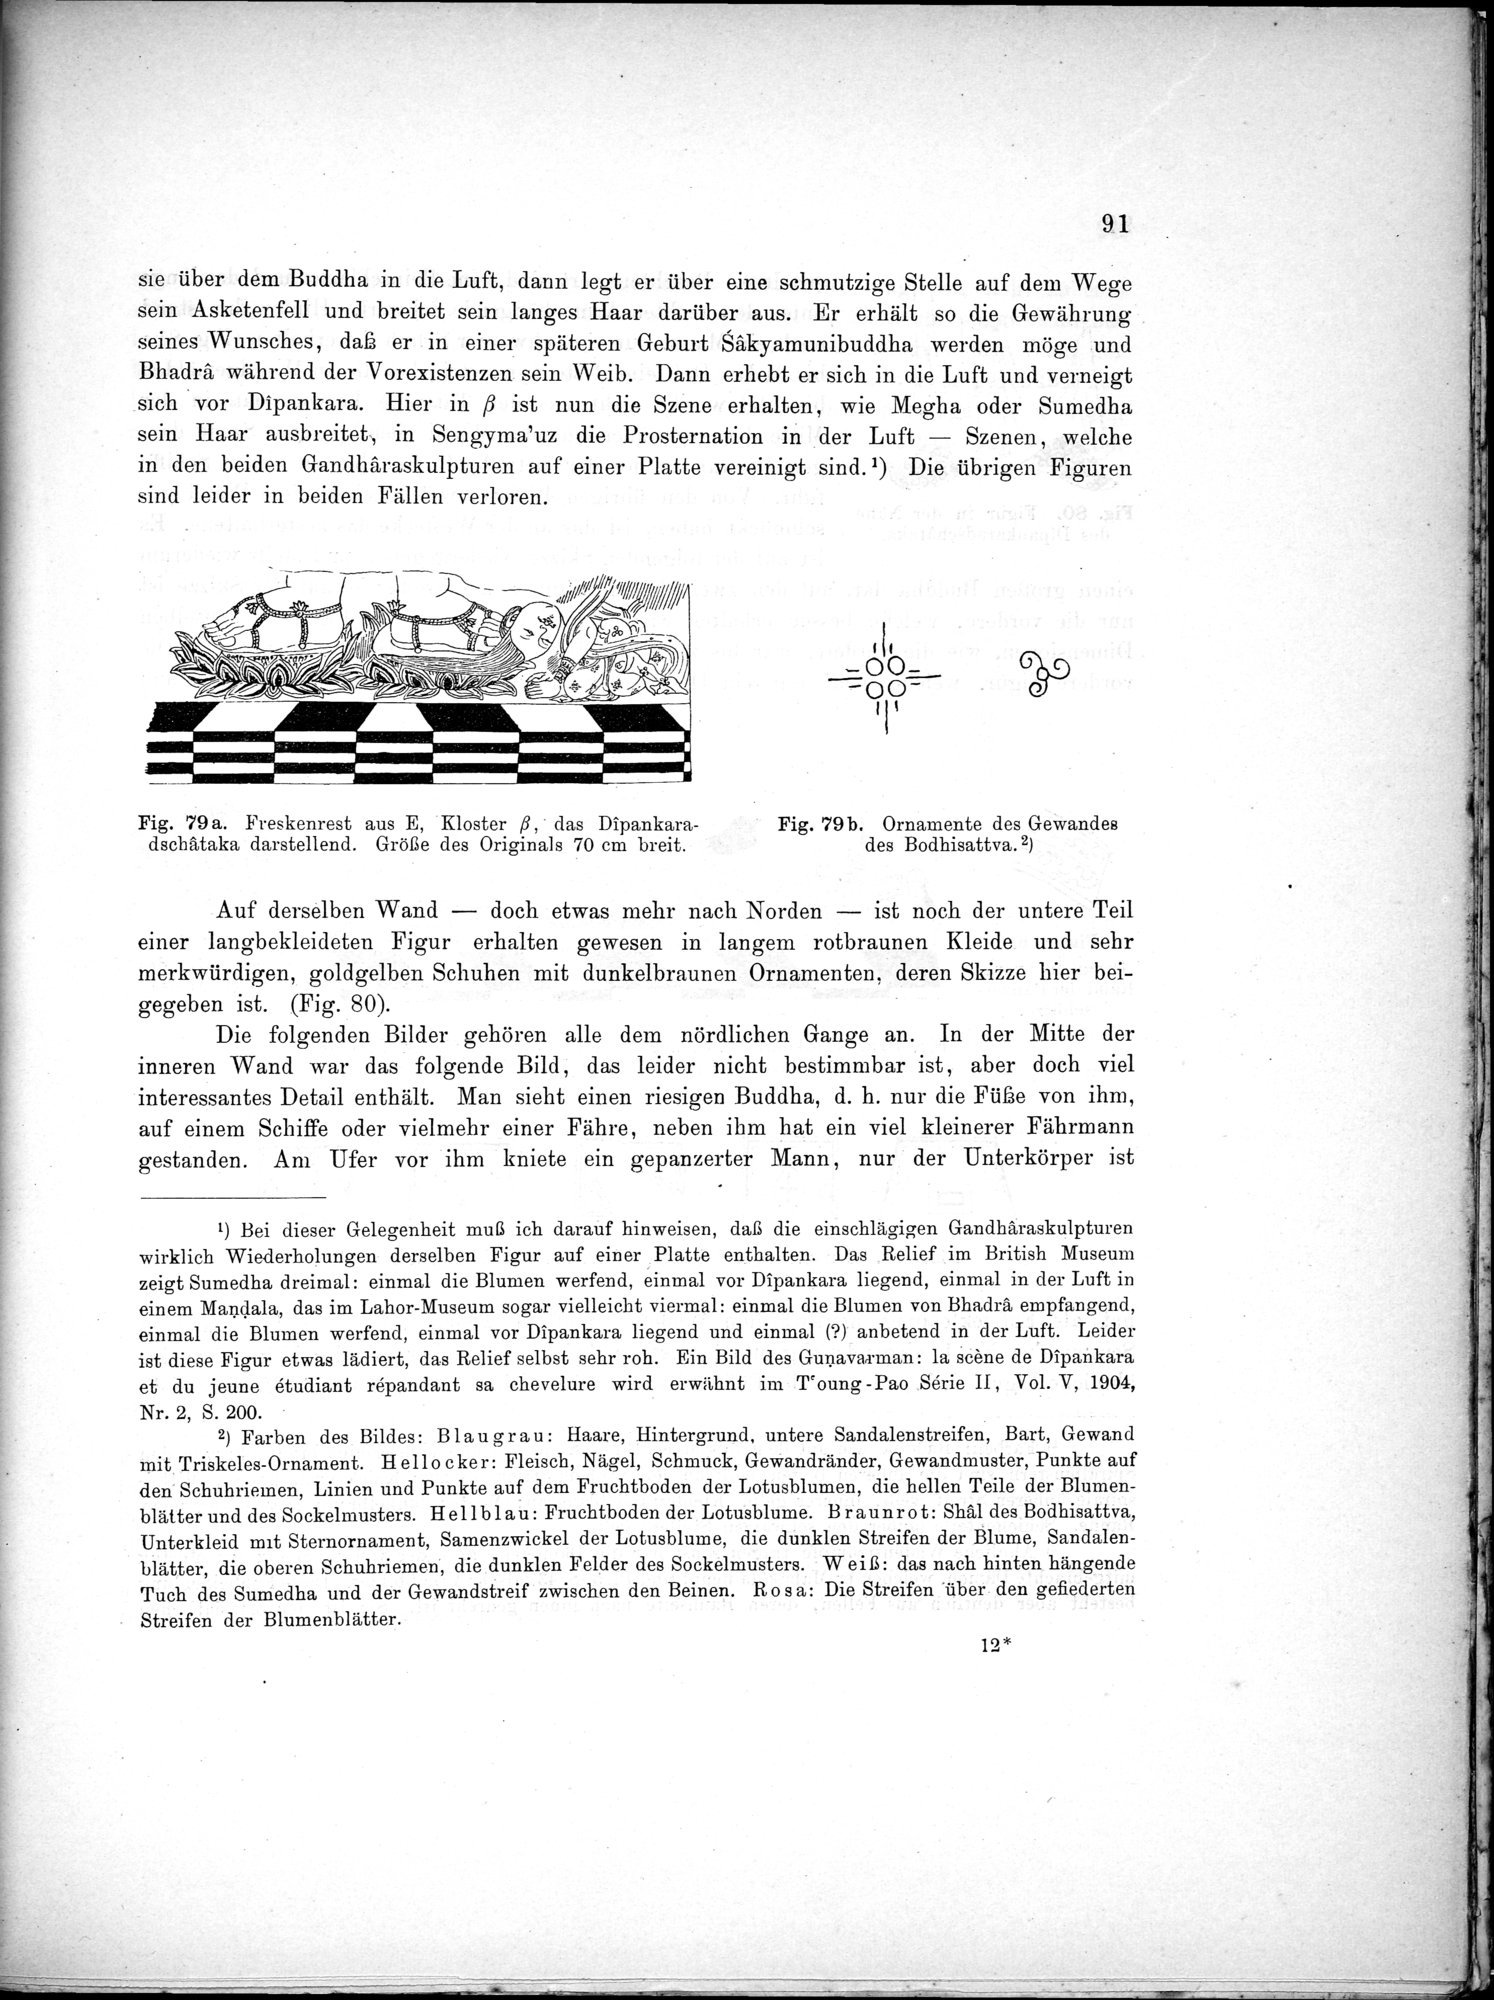 Bericht über archäologische Arbeiten in Idikutschari und Umgebung im Winter 1902-1903 : vol.1 / Page 101 (Grayscale High Resolution Image)